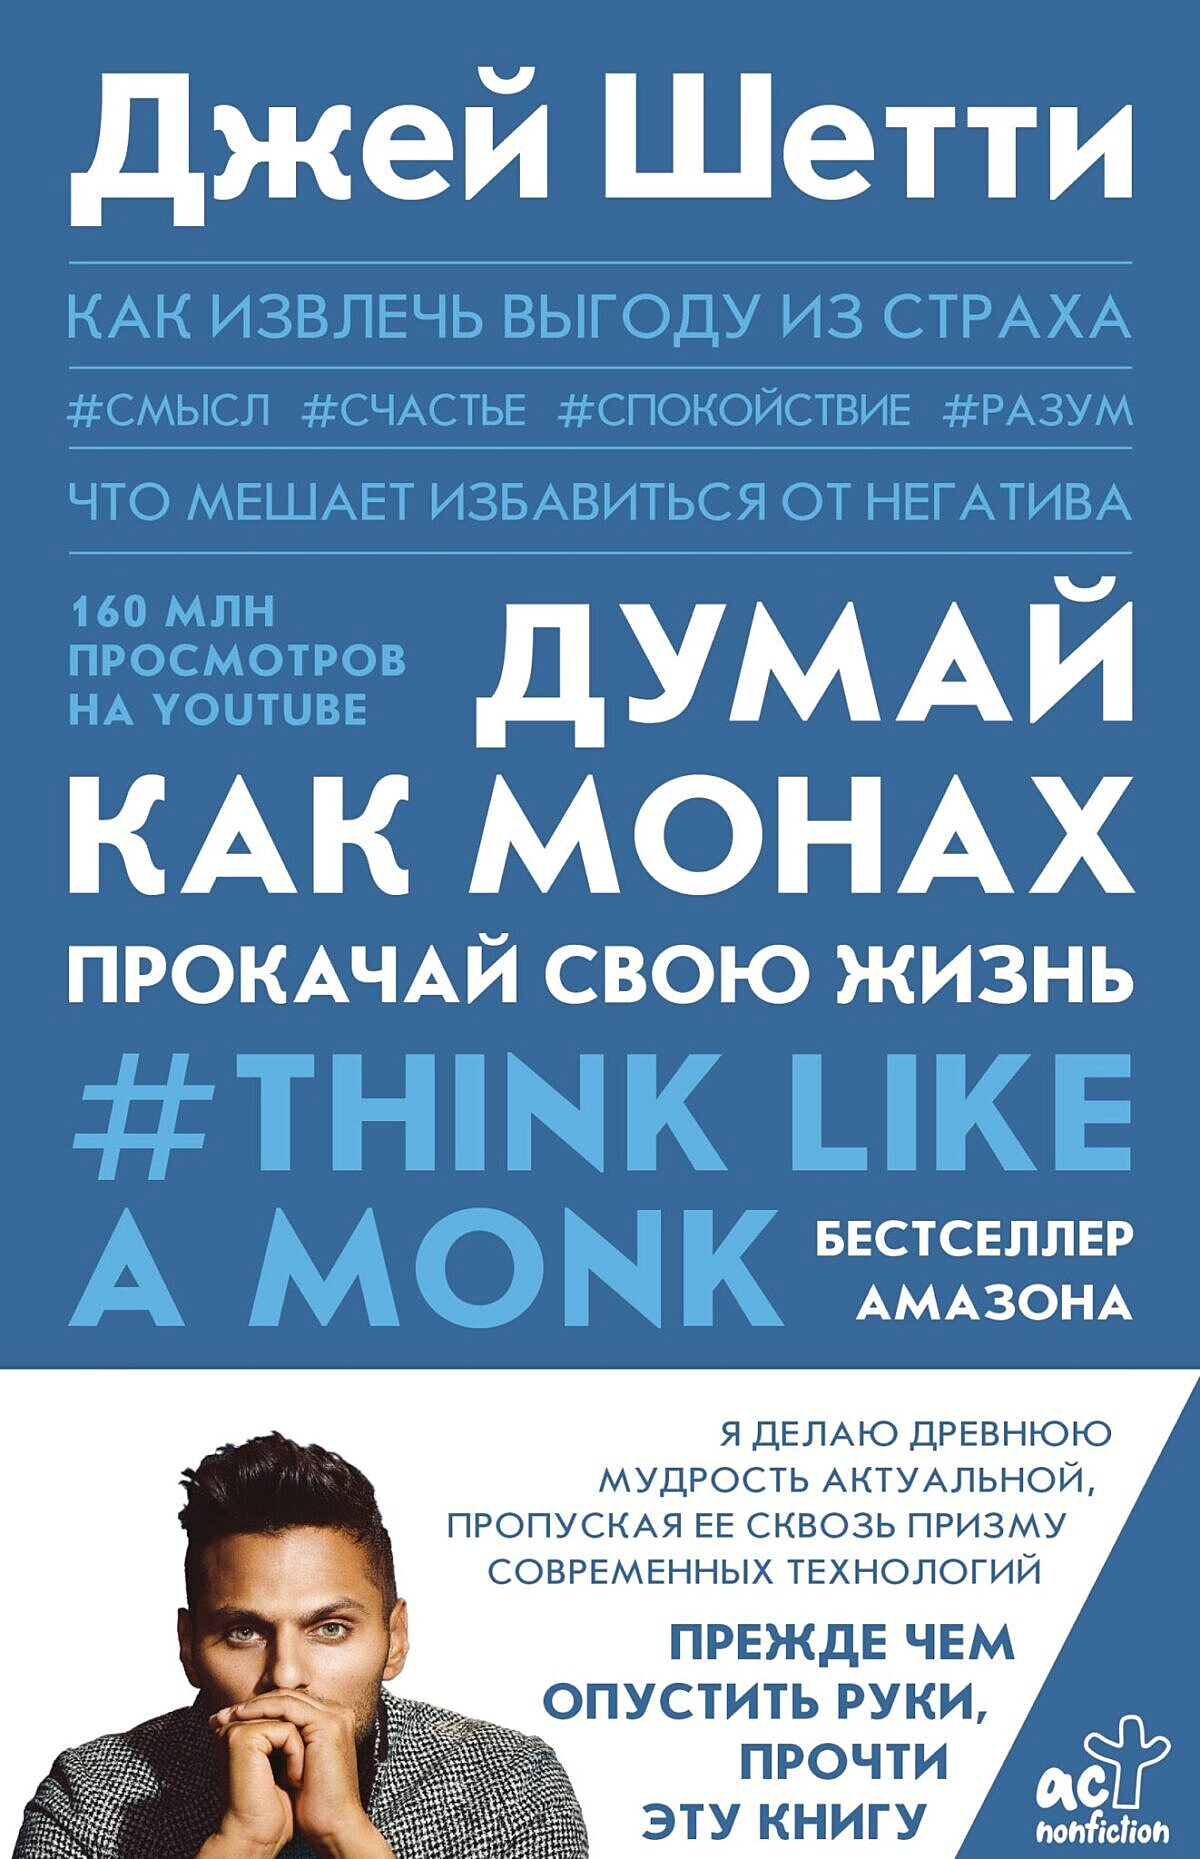 В России выходит книга Джея Шетти  «Думай как монах. Прокачай свою жизнь»